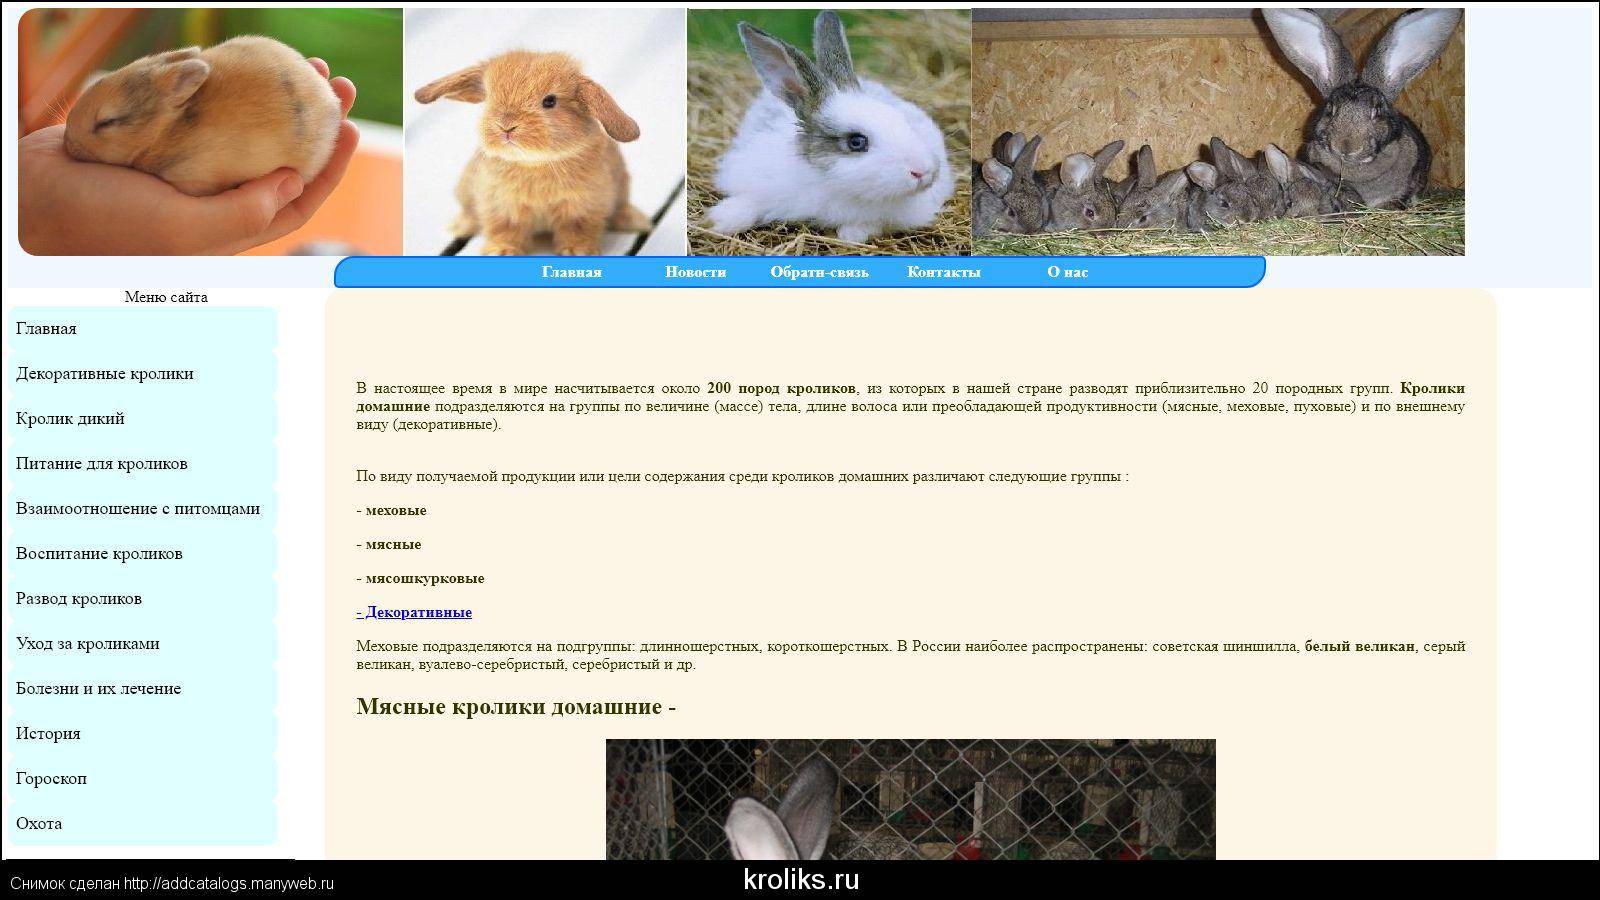 Карликовый кролик: уход и содержание в домашних условиях, отзывы, размеры, виды, продолжительность жизни, внешность и фото